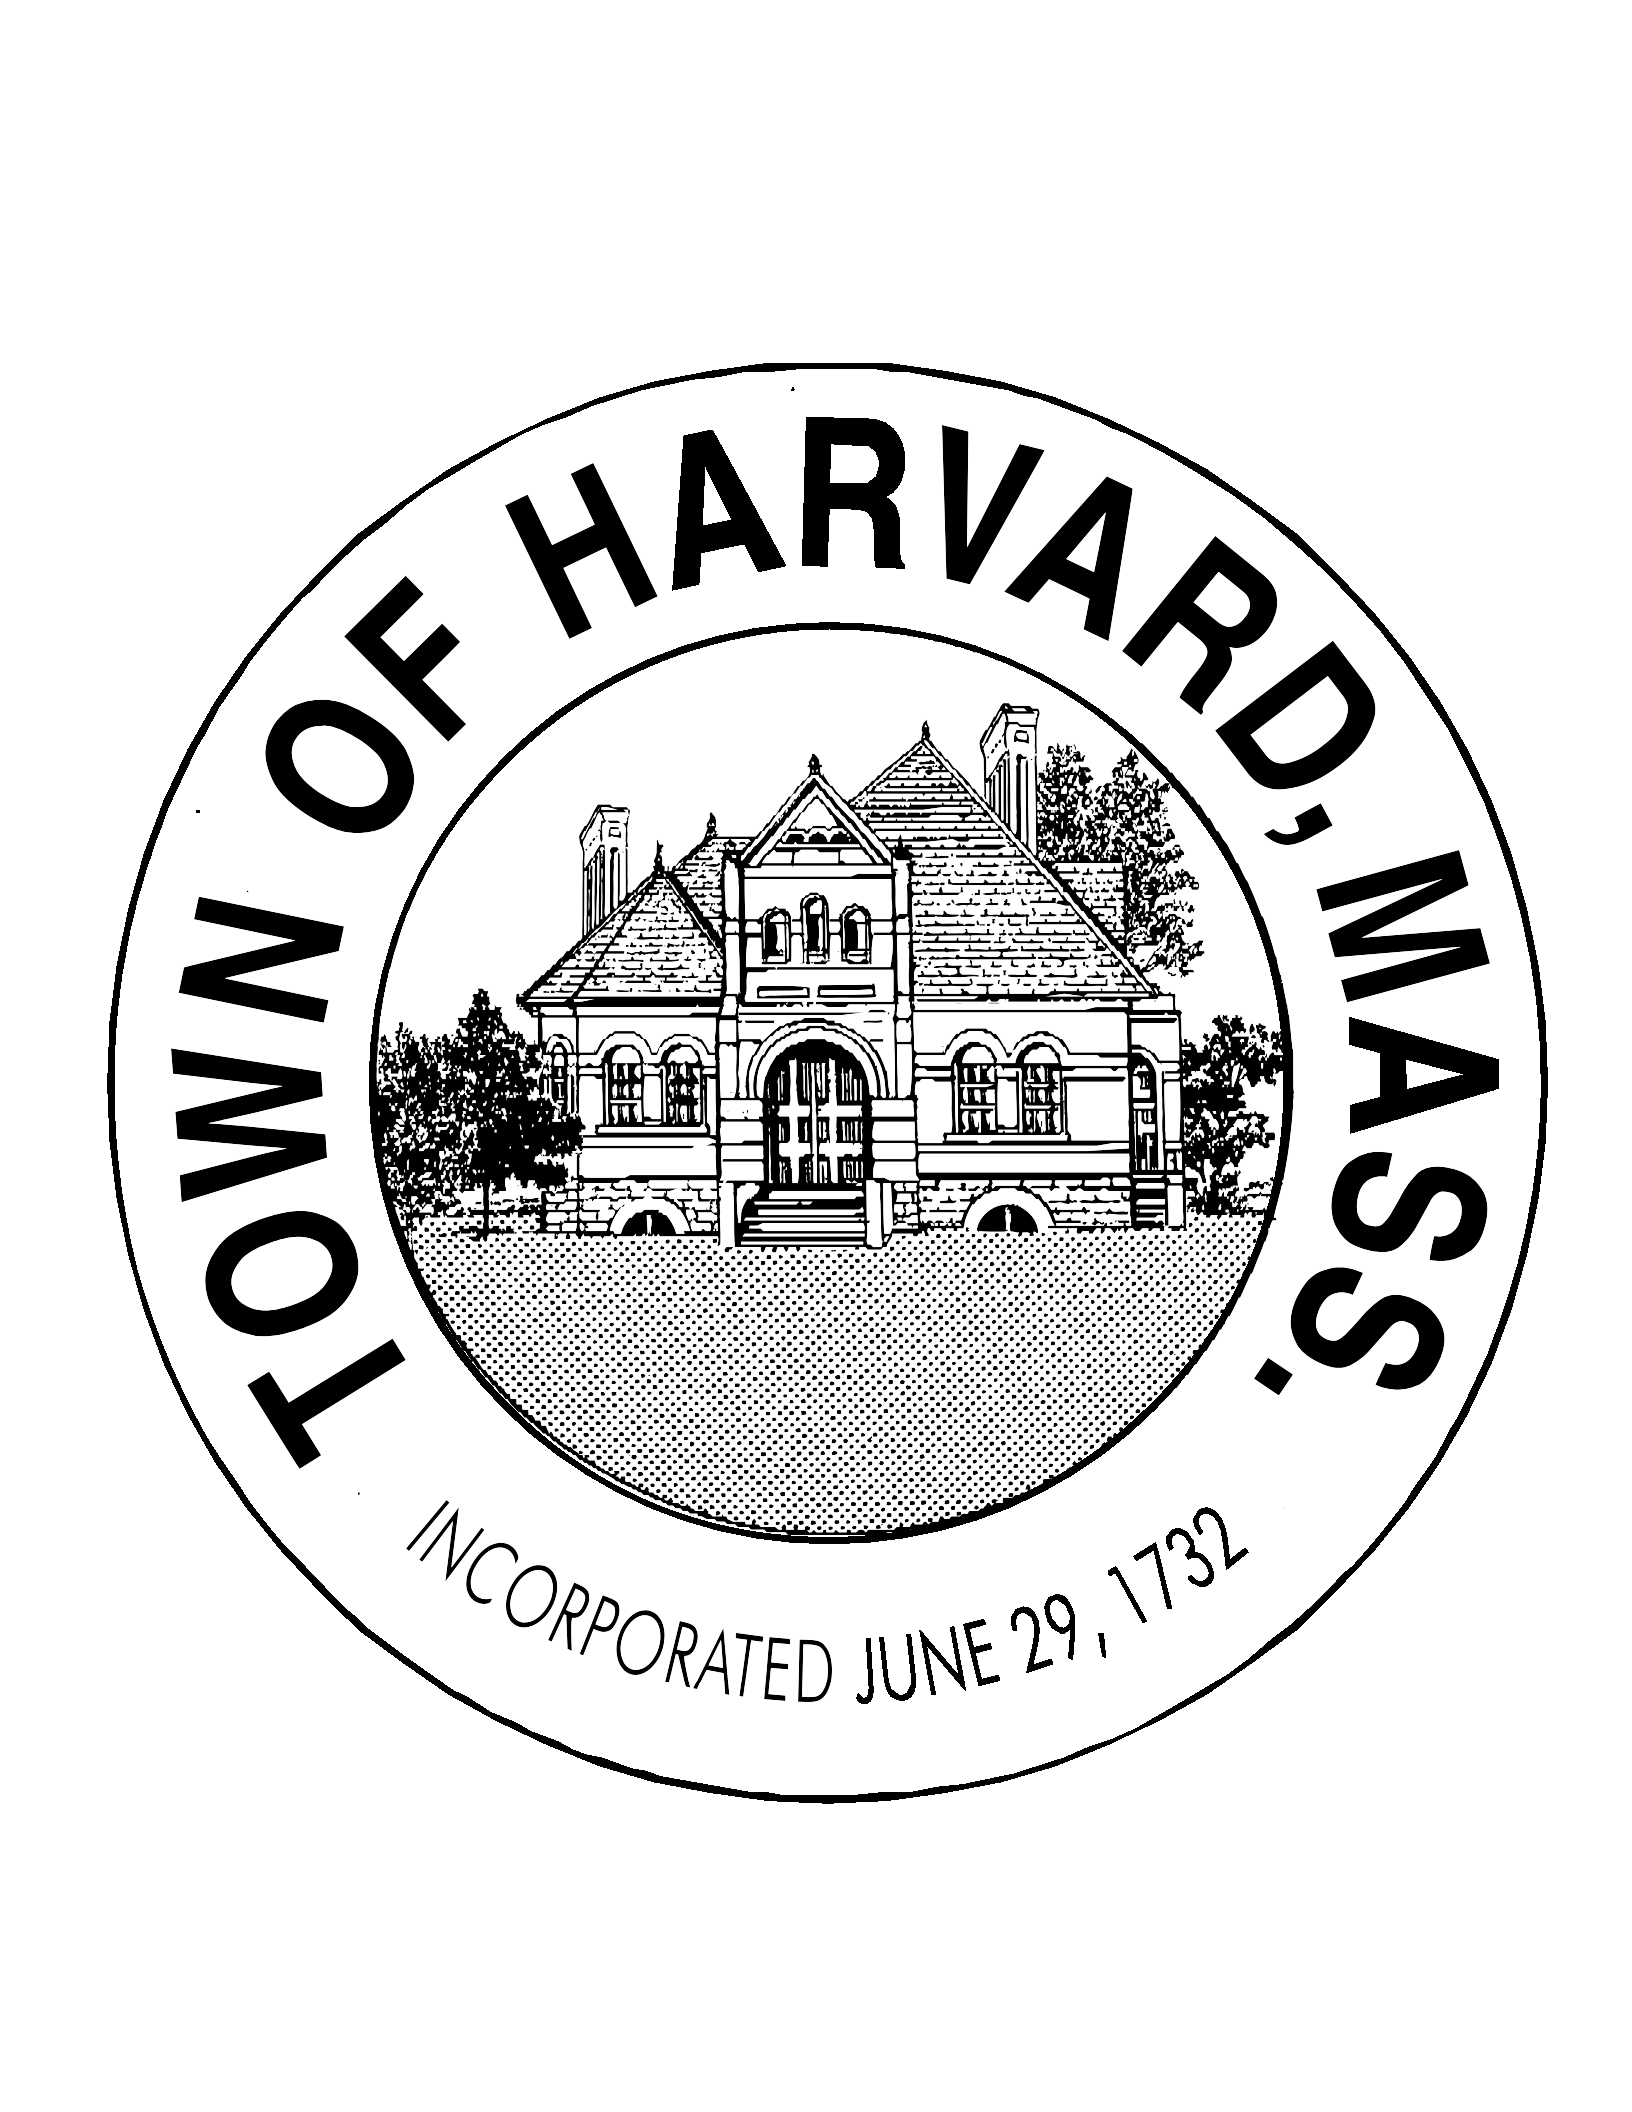 Town of Harvard